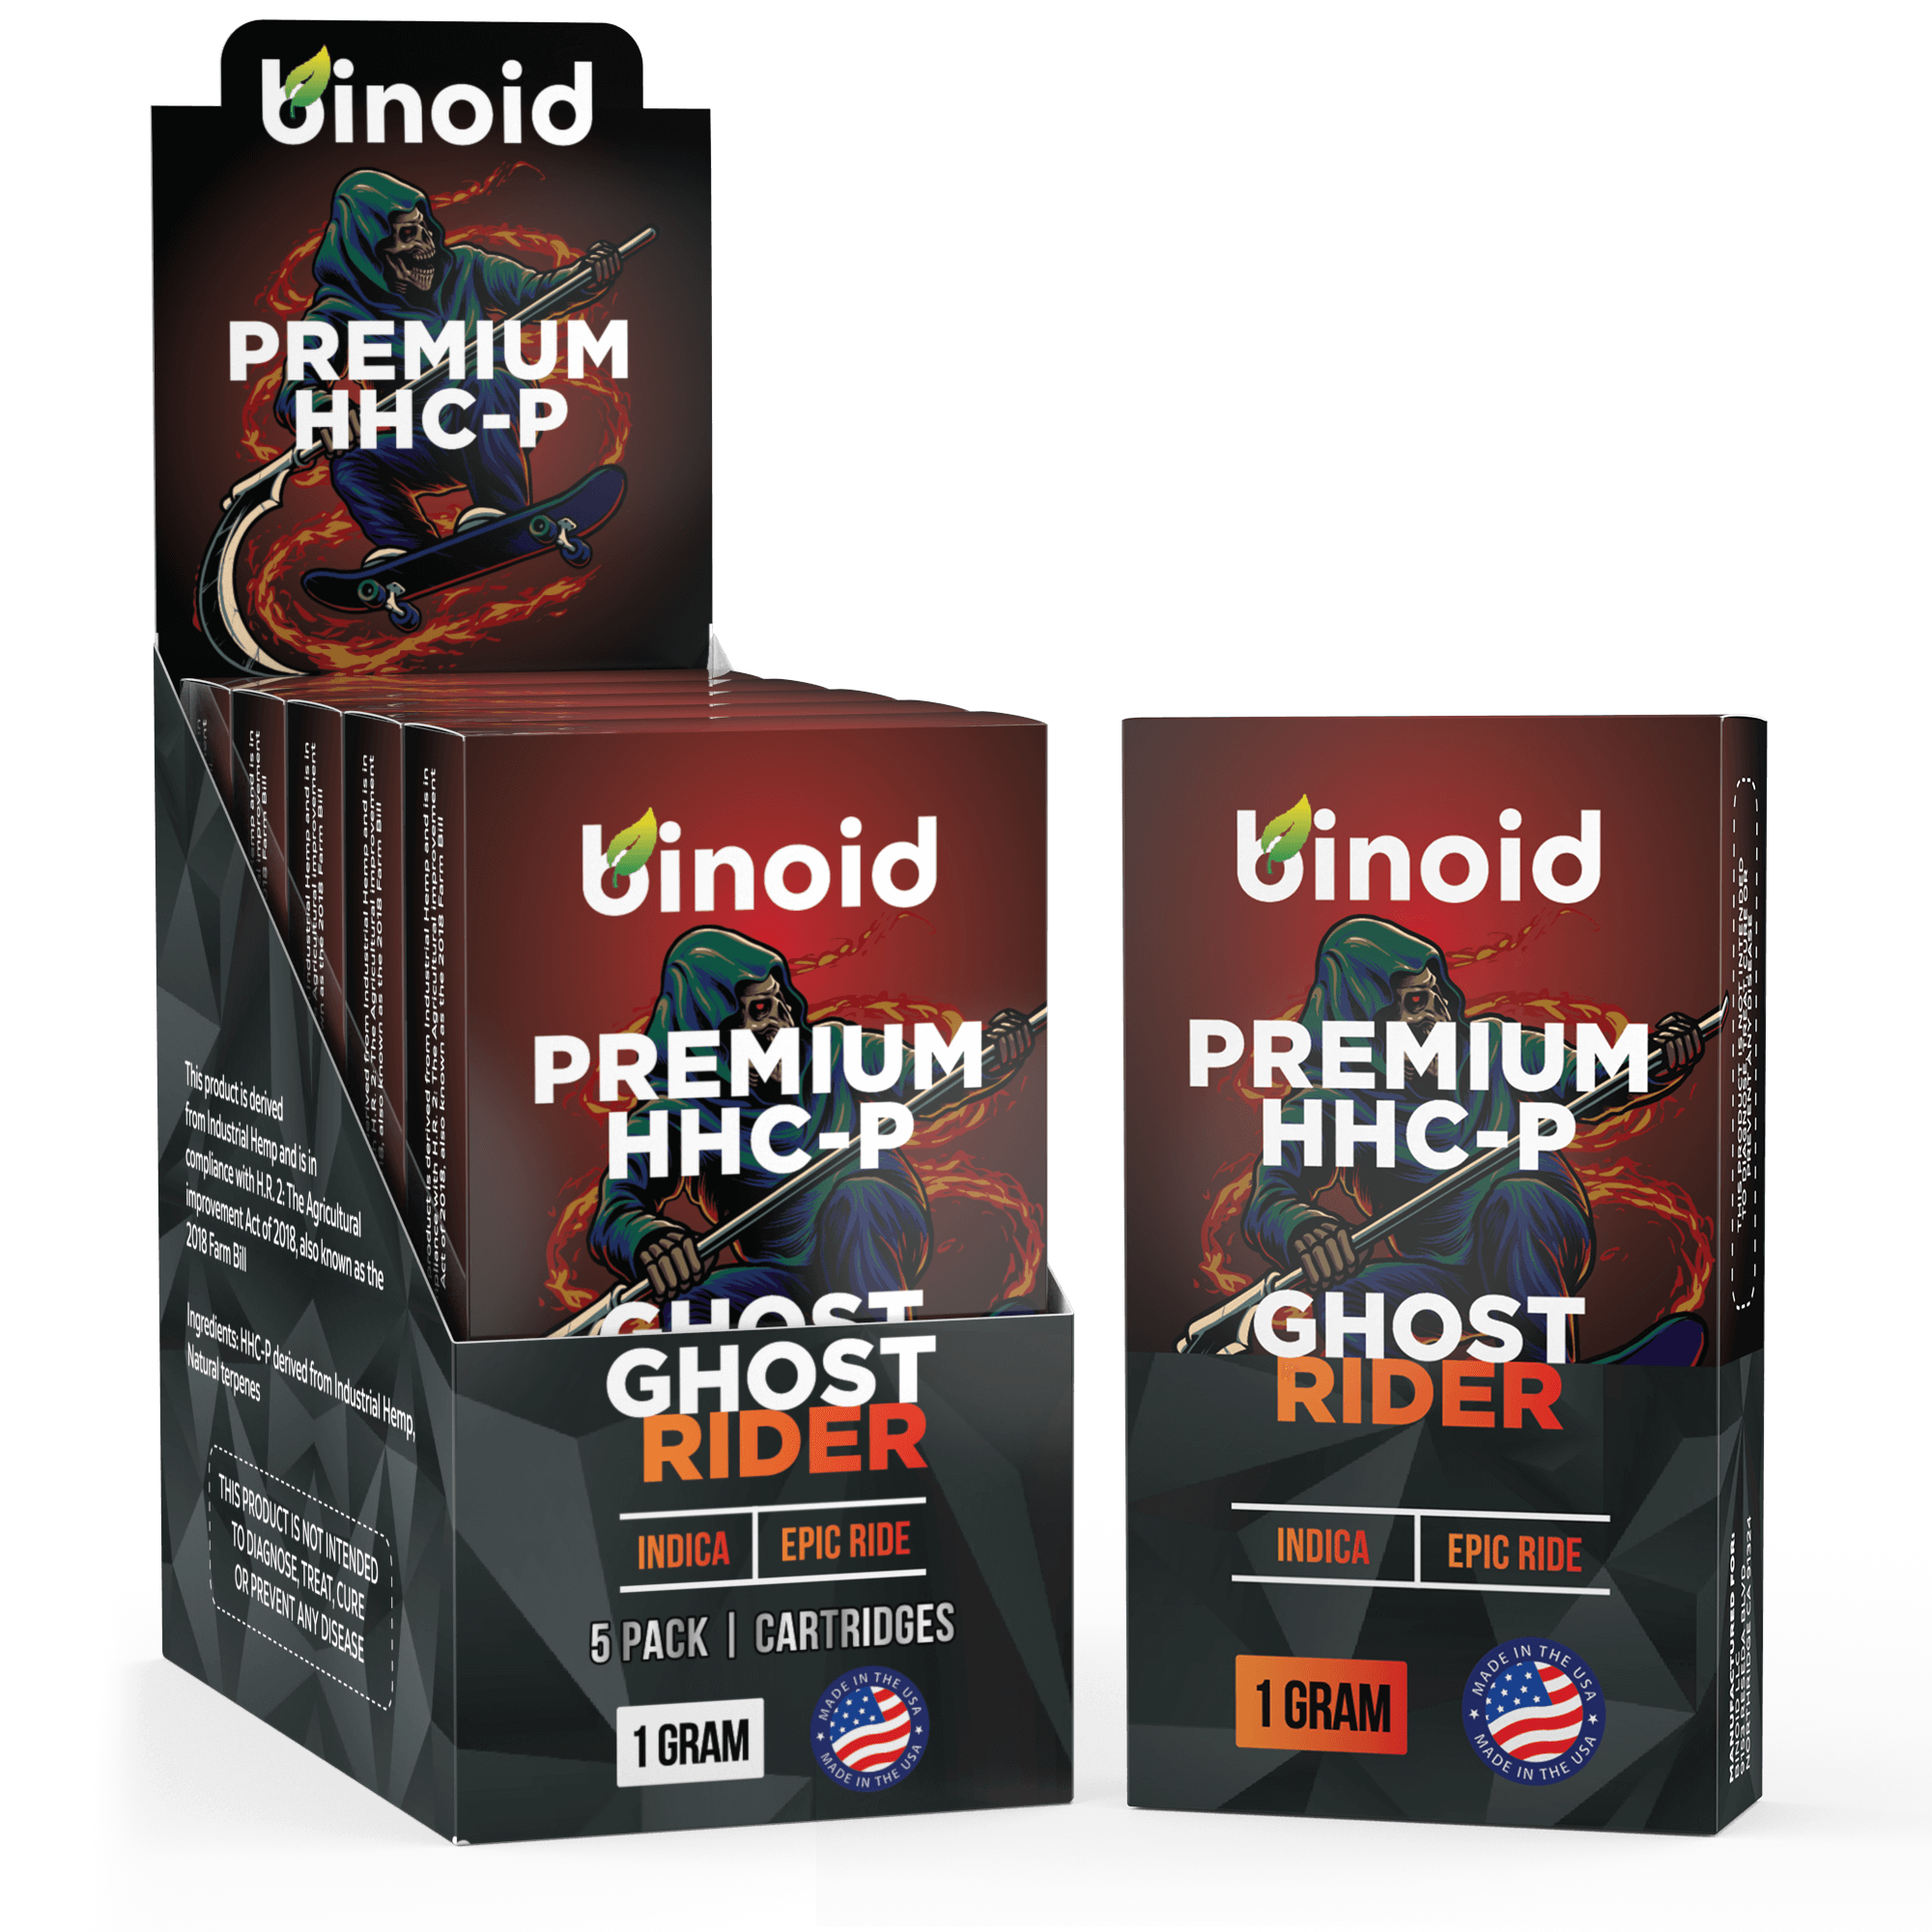 Binoid HHC-P Vape Cartridge - Ghost Rider Best Price